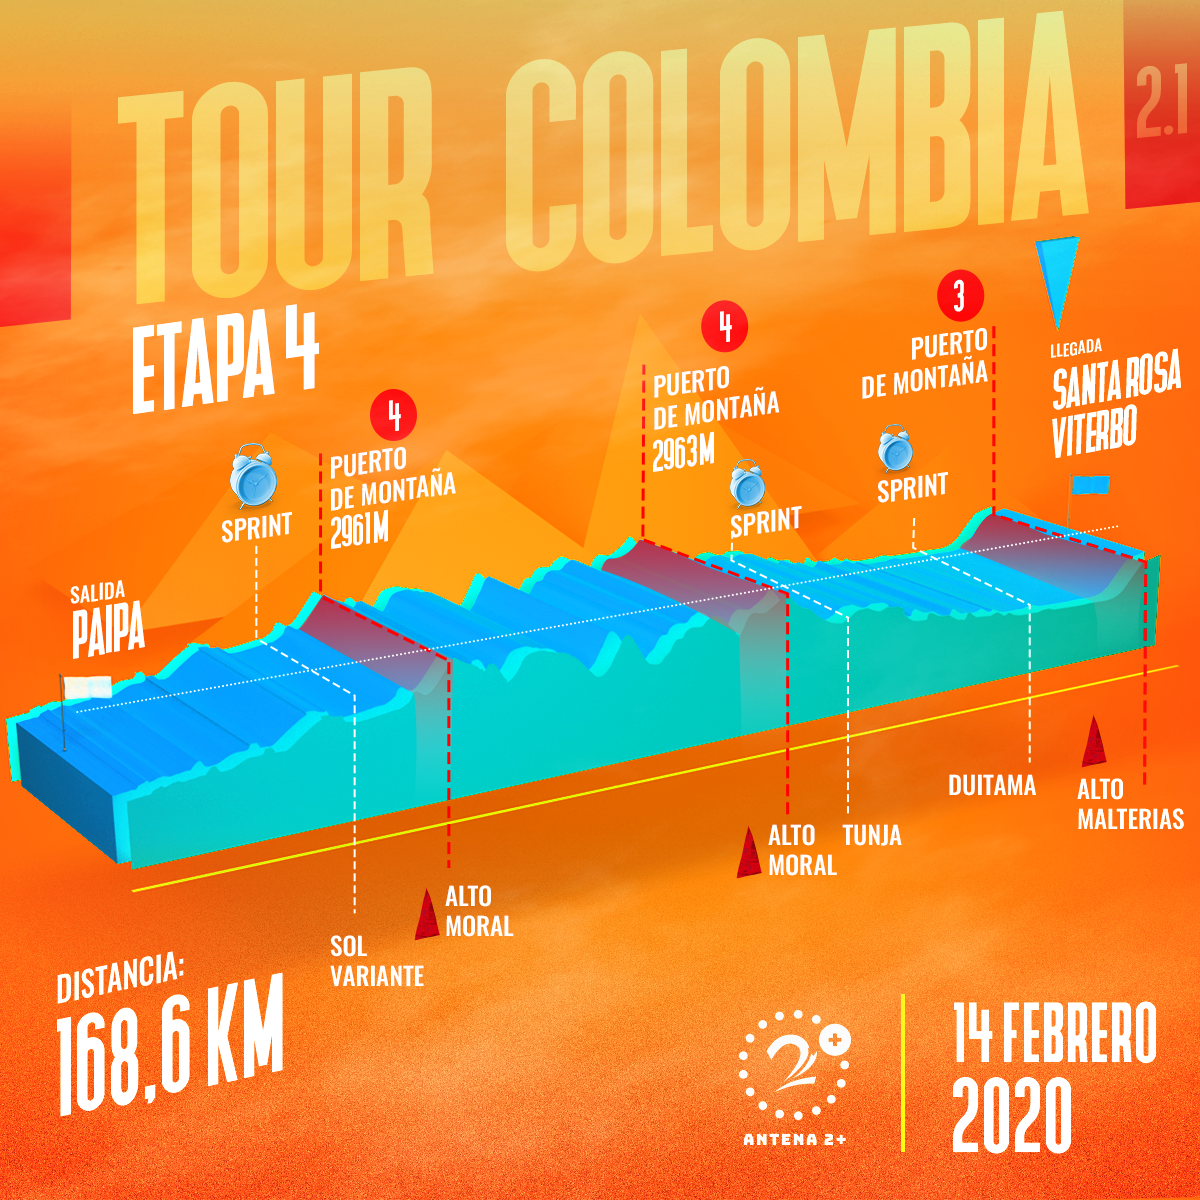 Tour Colombia 2020, etapa 4